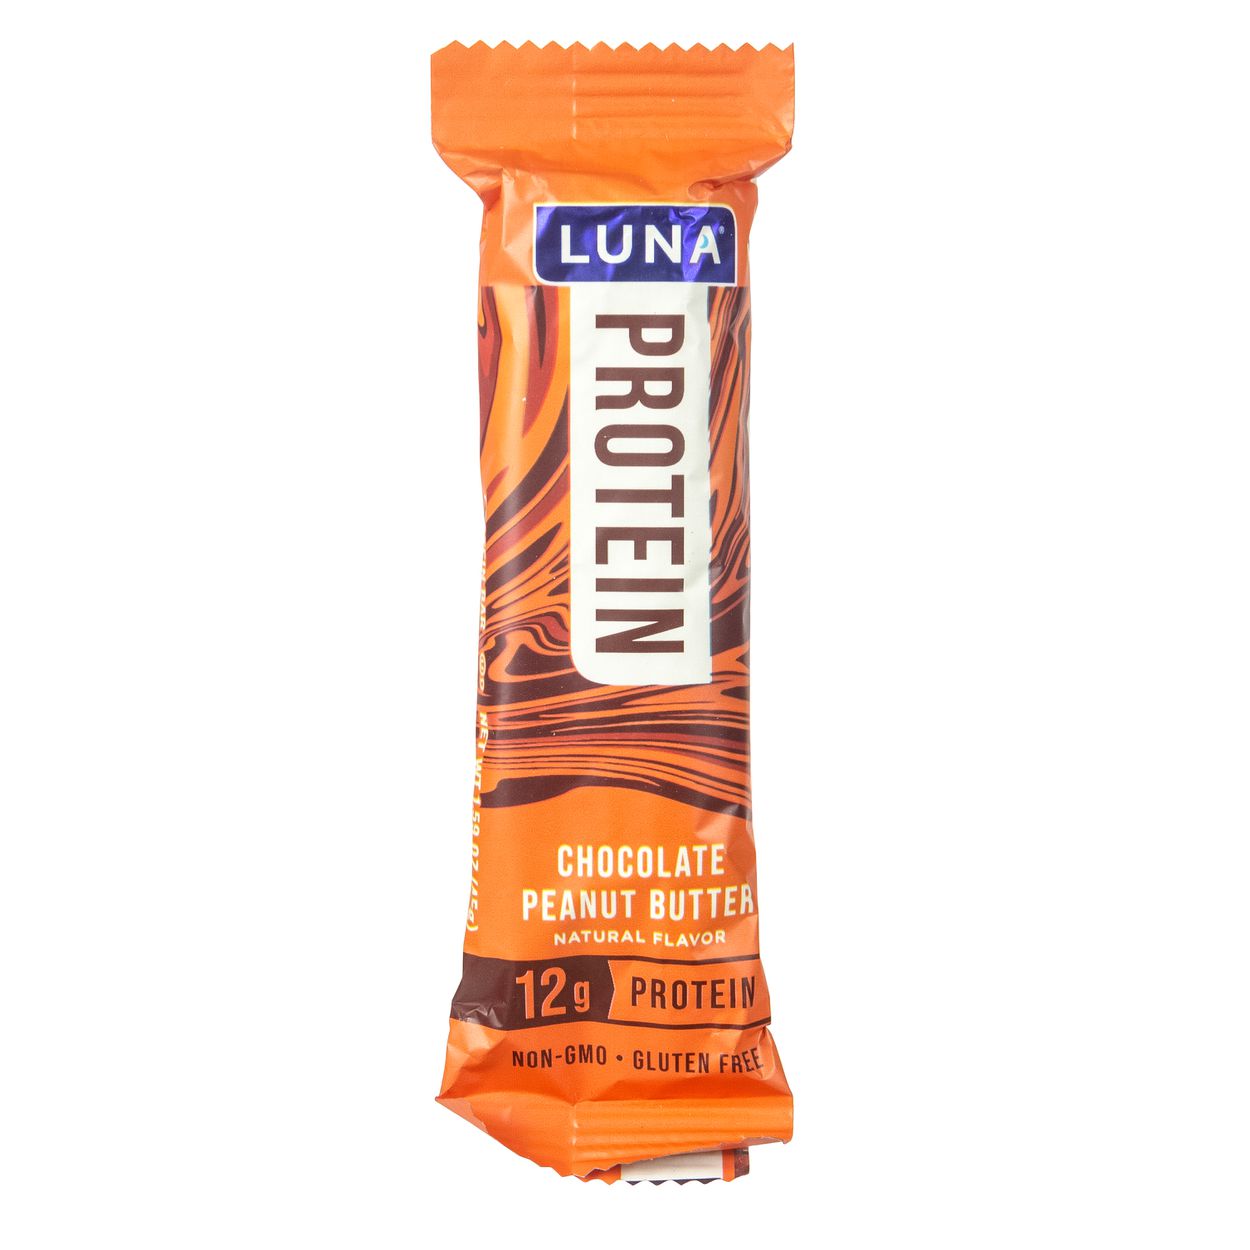 Clif Bar Luna Protein Bar Chocolate Peanut Butter Azure Standard